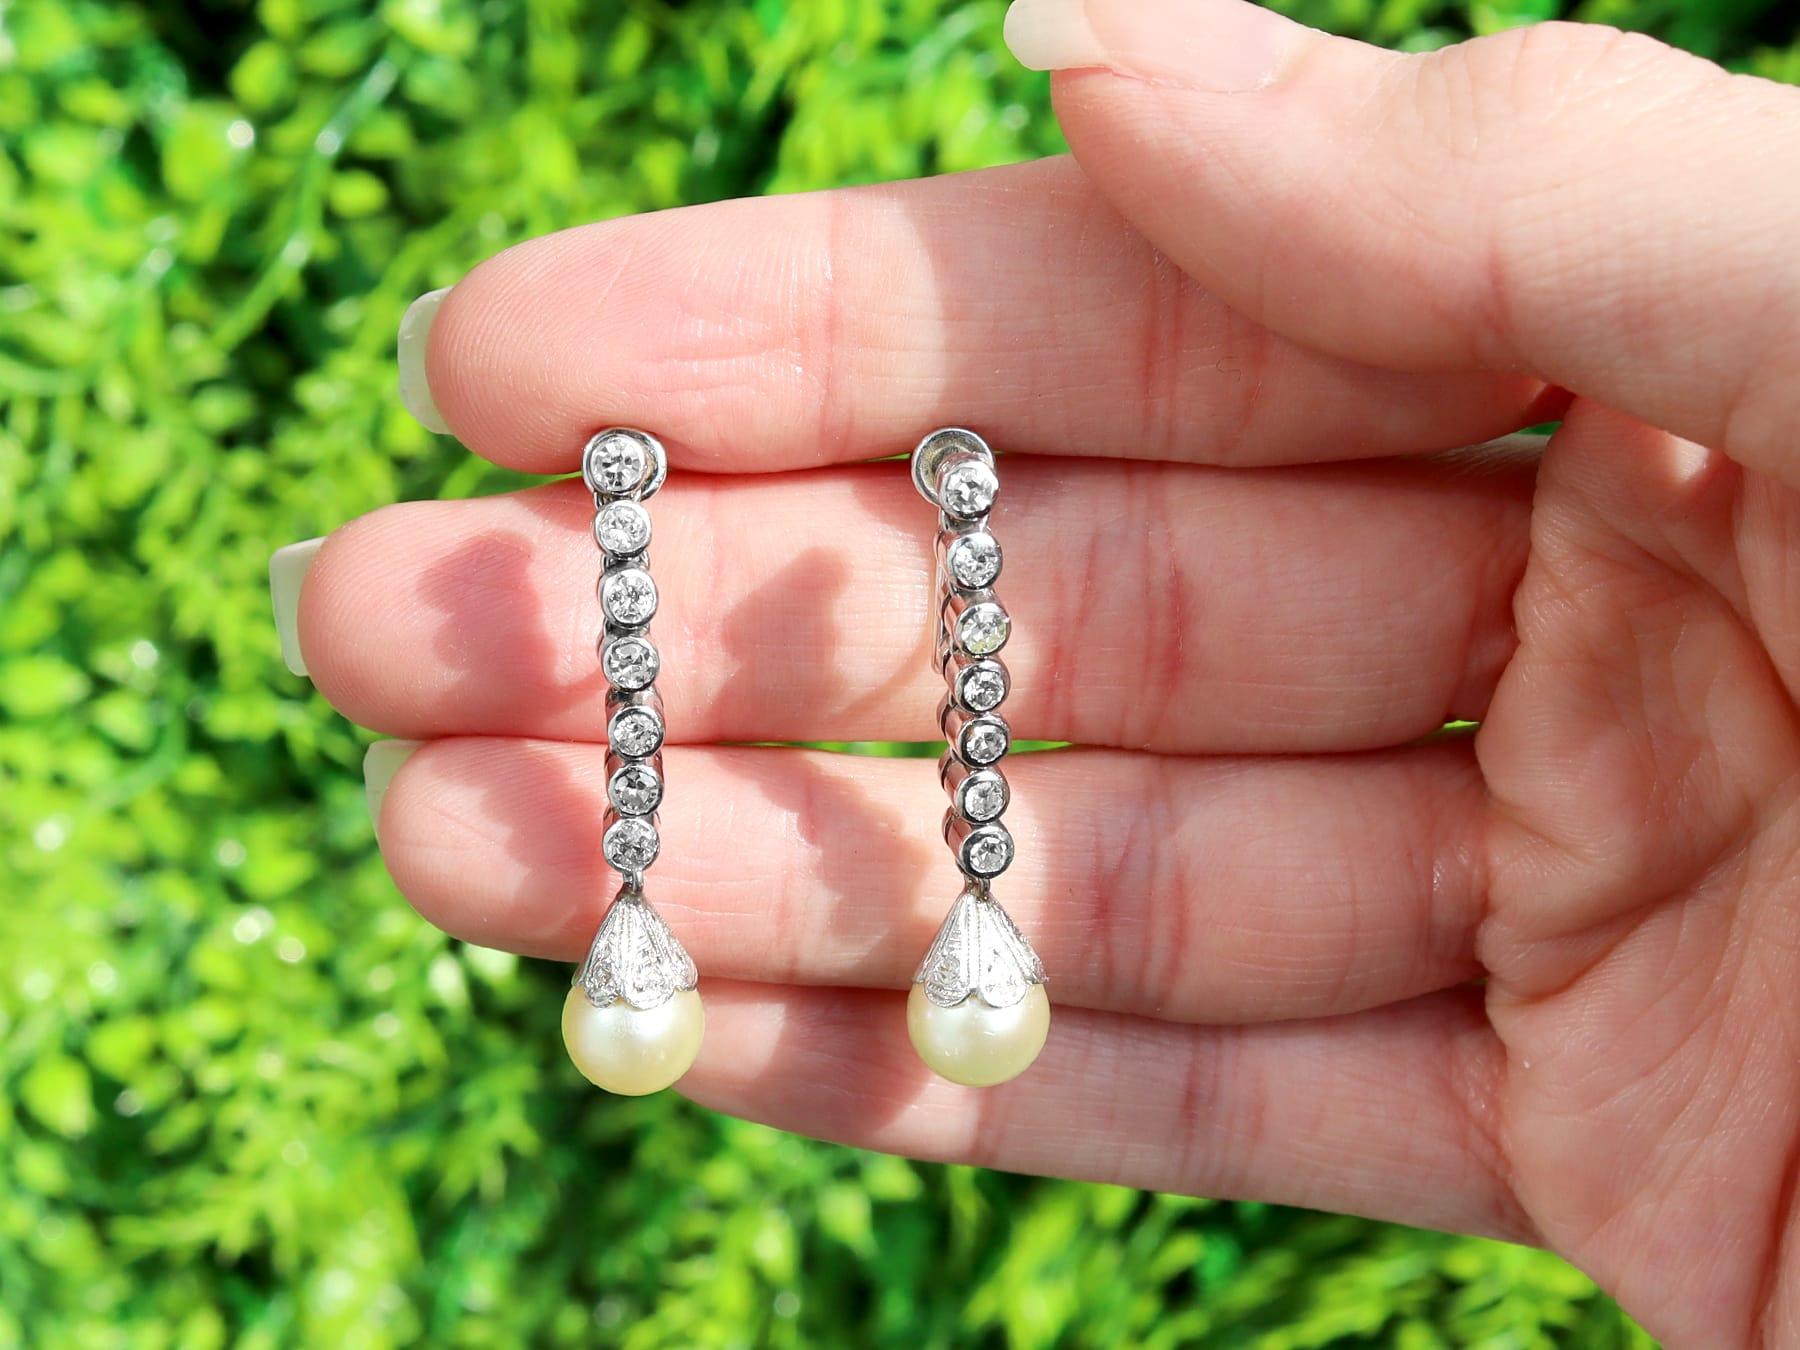 Ein beeindruckendes Paar Ohrringe mit 0,70 Karat Diamanten und Zuchtperlen aus Platin und 18-karätigem Weißgold; Teil unserer vielfältigen Perlen-Nachlass-Schmuckkollektionen.

Diese feinen und eindrucksvollen Perlenohrringe sind aus Platin